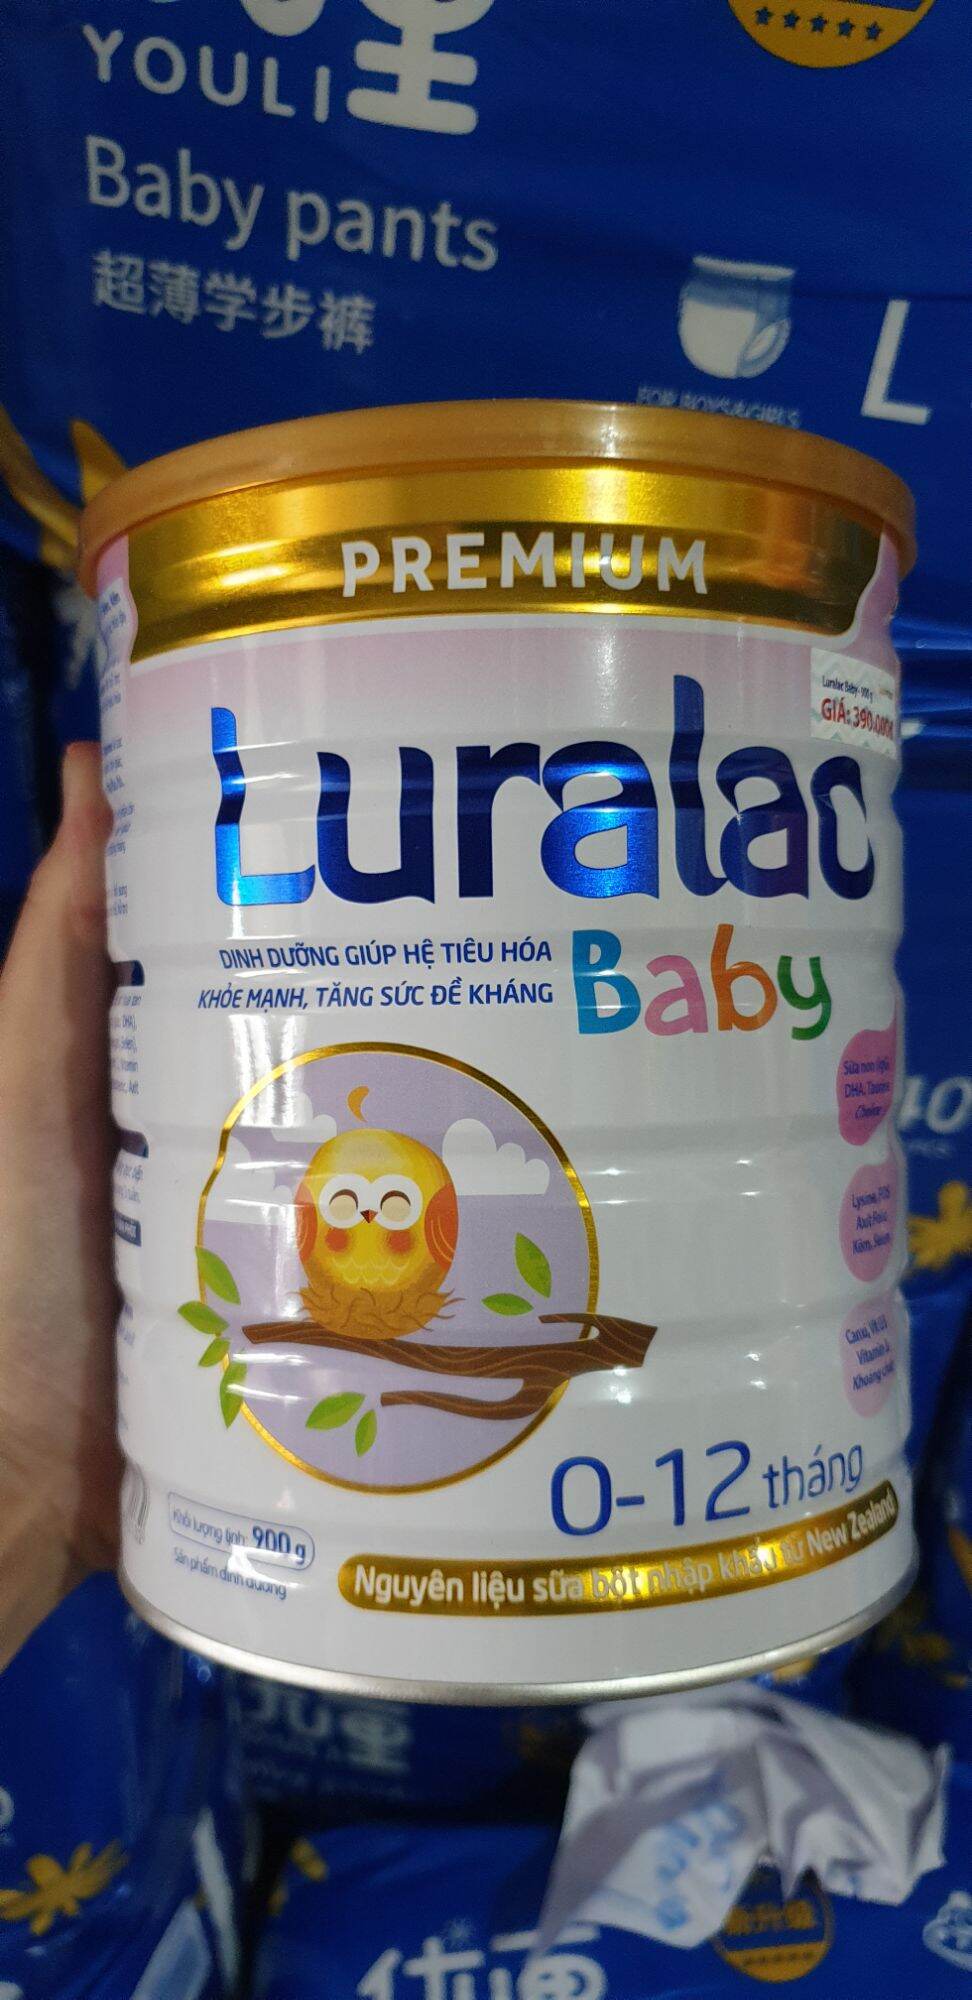 Sữa Luralac Baby 0-12 tháng 900g